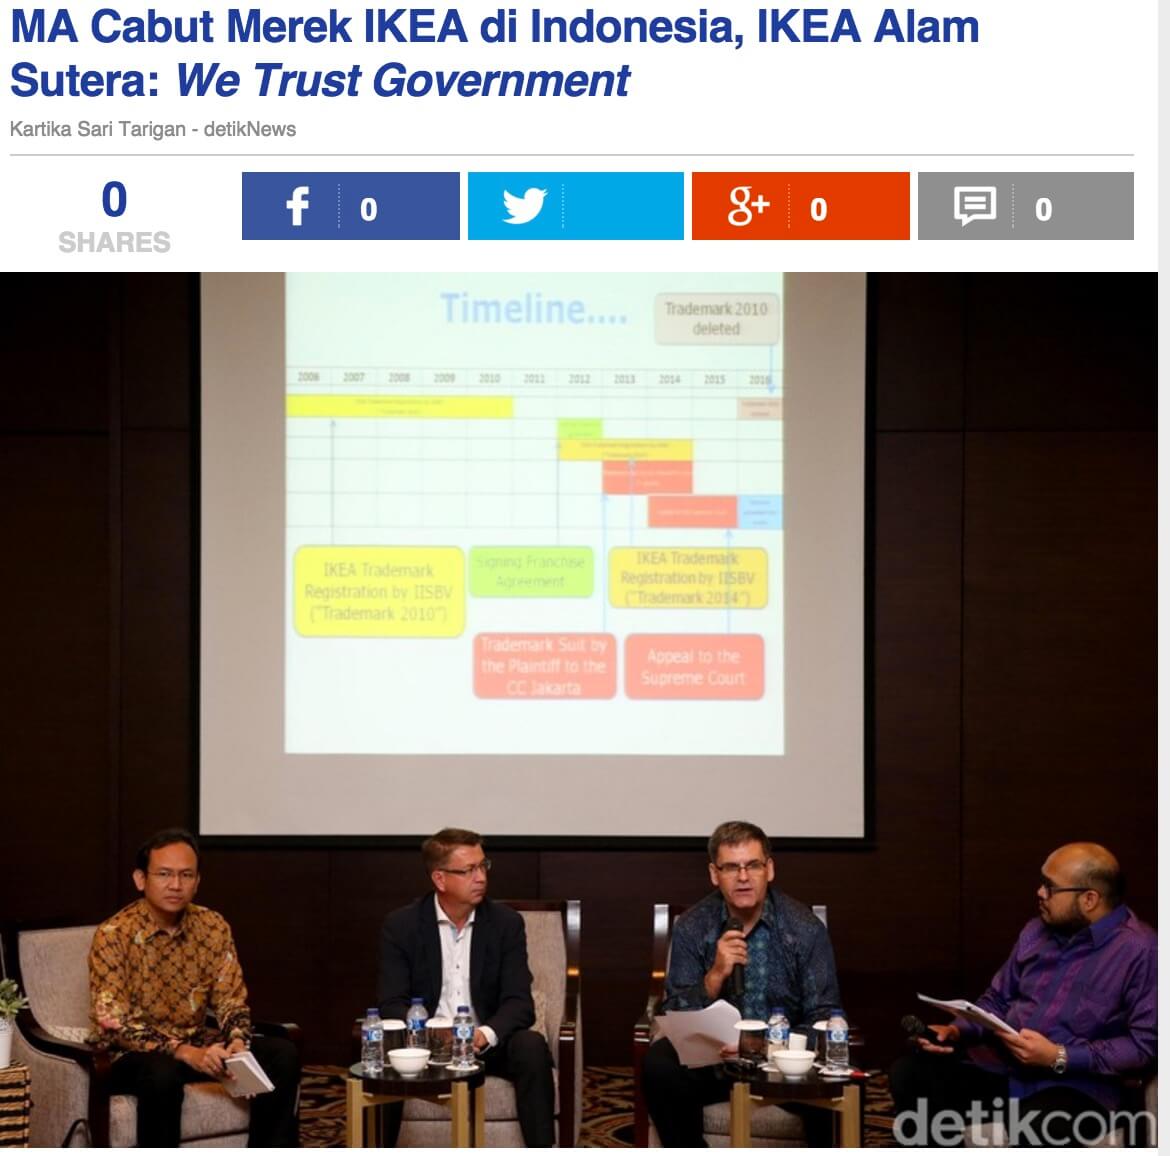 「最高裁はインドネシアにおけるIKEA商標を剥奪。IKEA Alam Sutera社は「我々は政府を信じる」とコメント」とのdetik.comの記事より